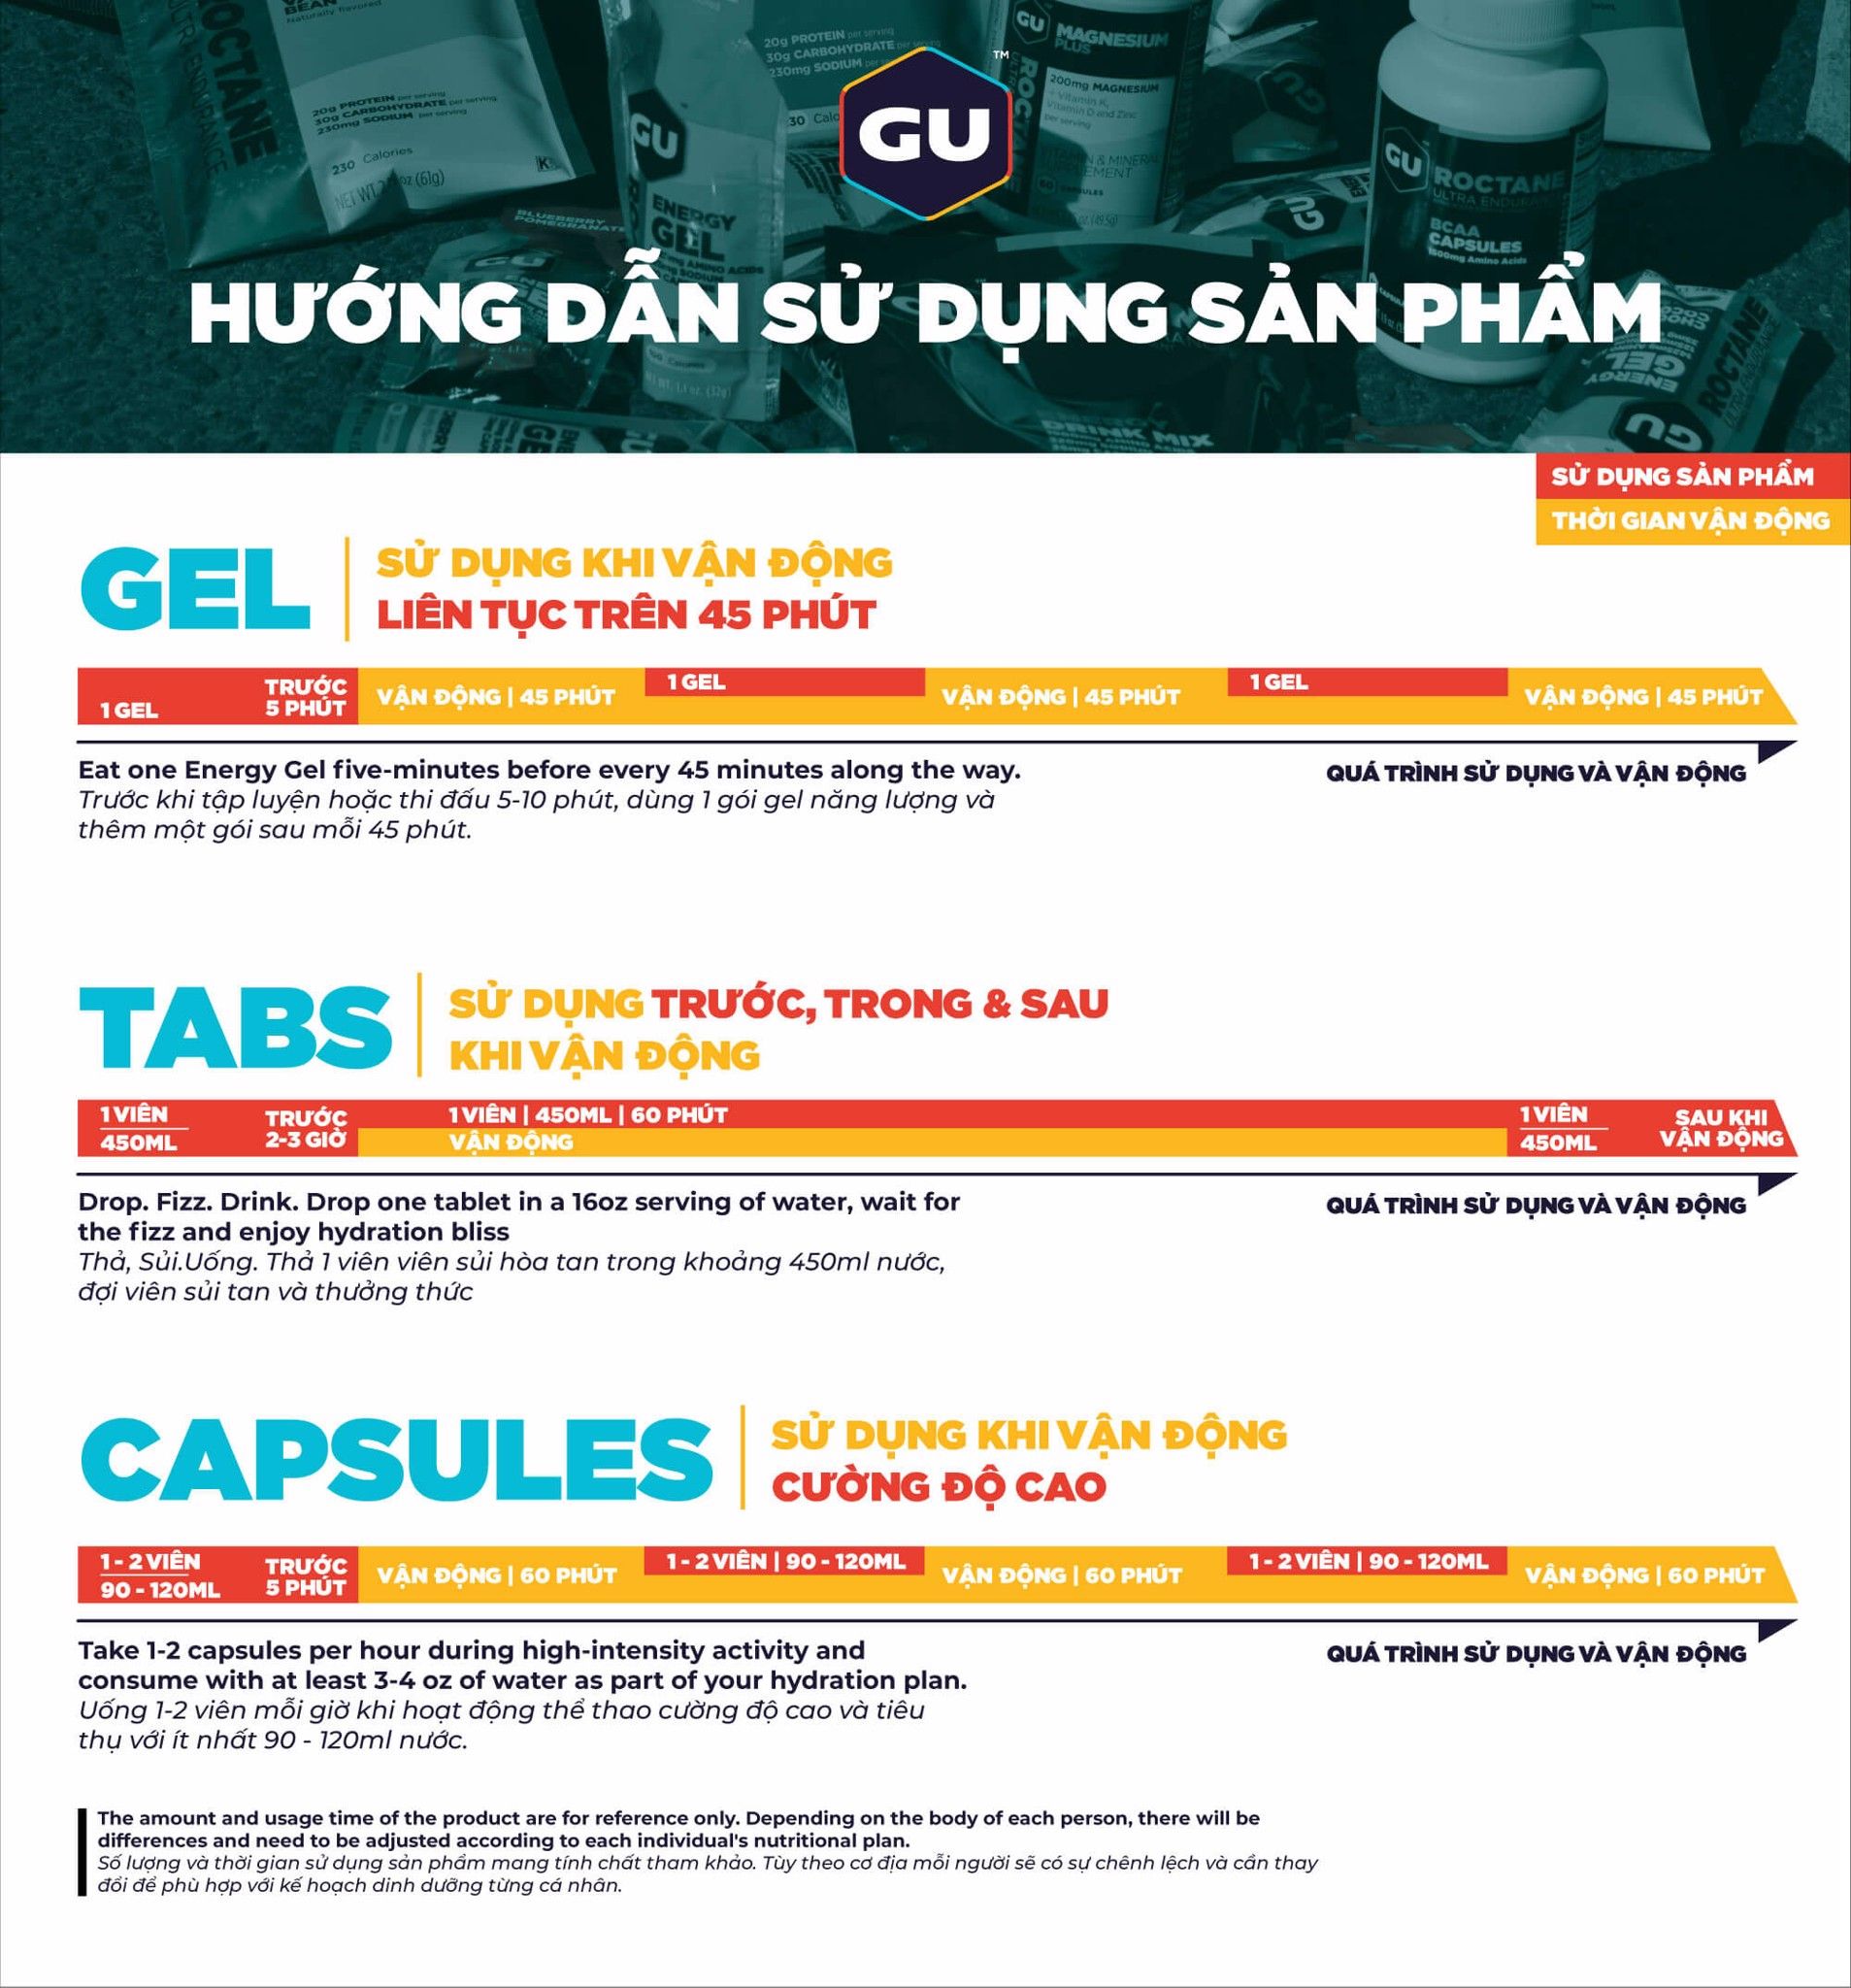 GU-How-to-use-huong-dan-su-dung